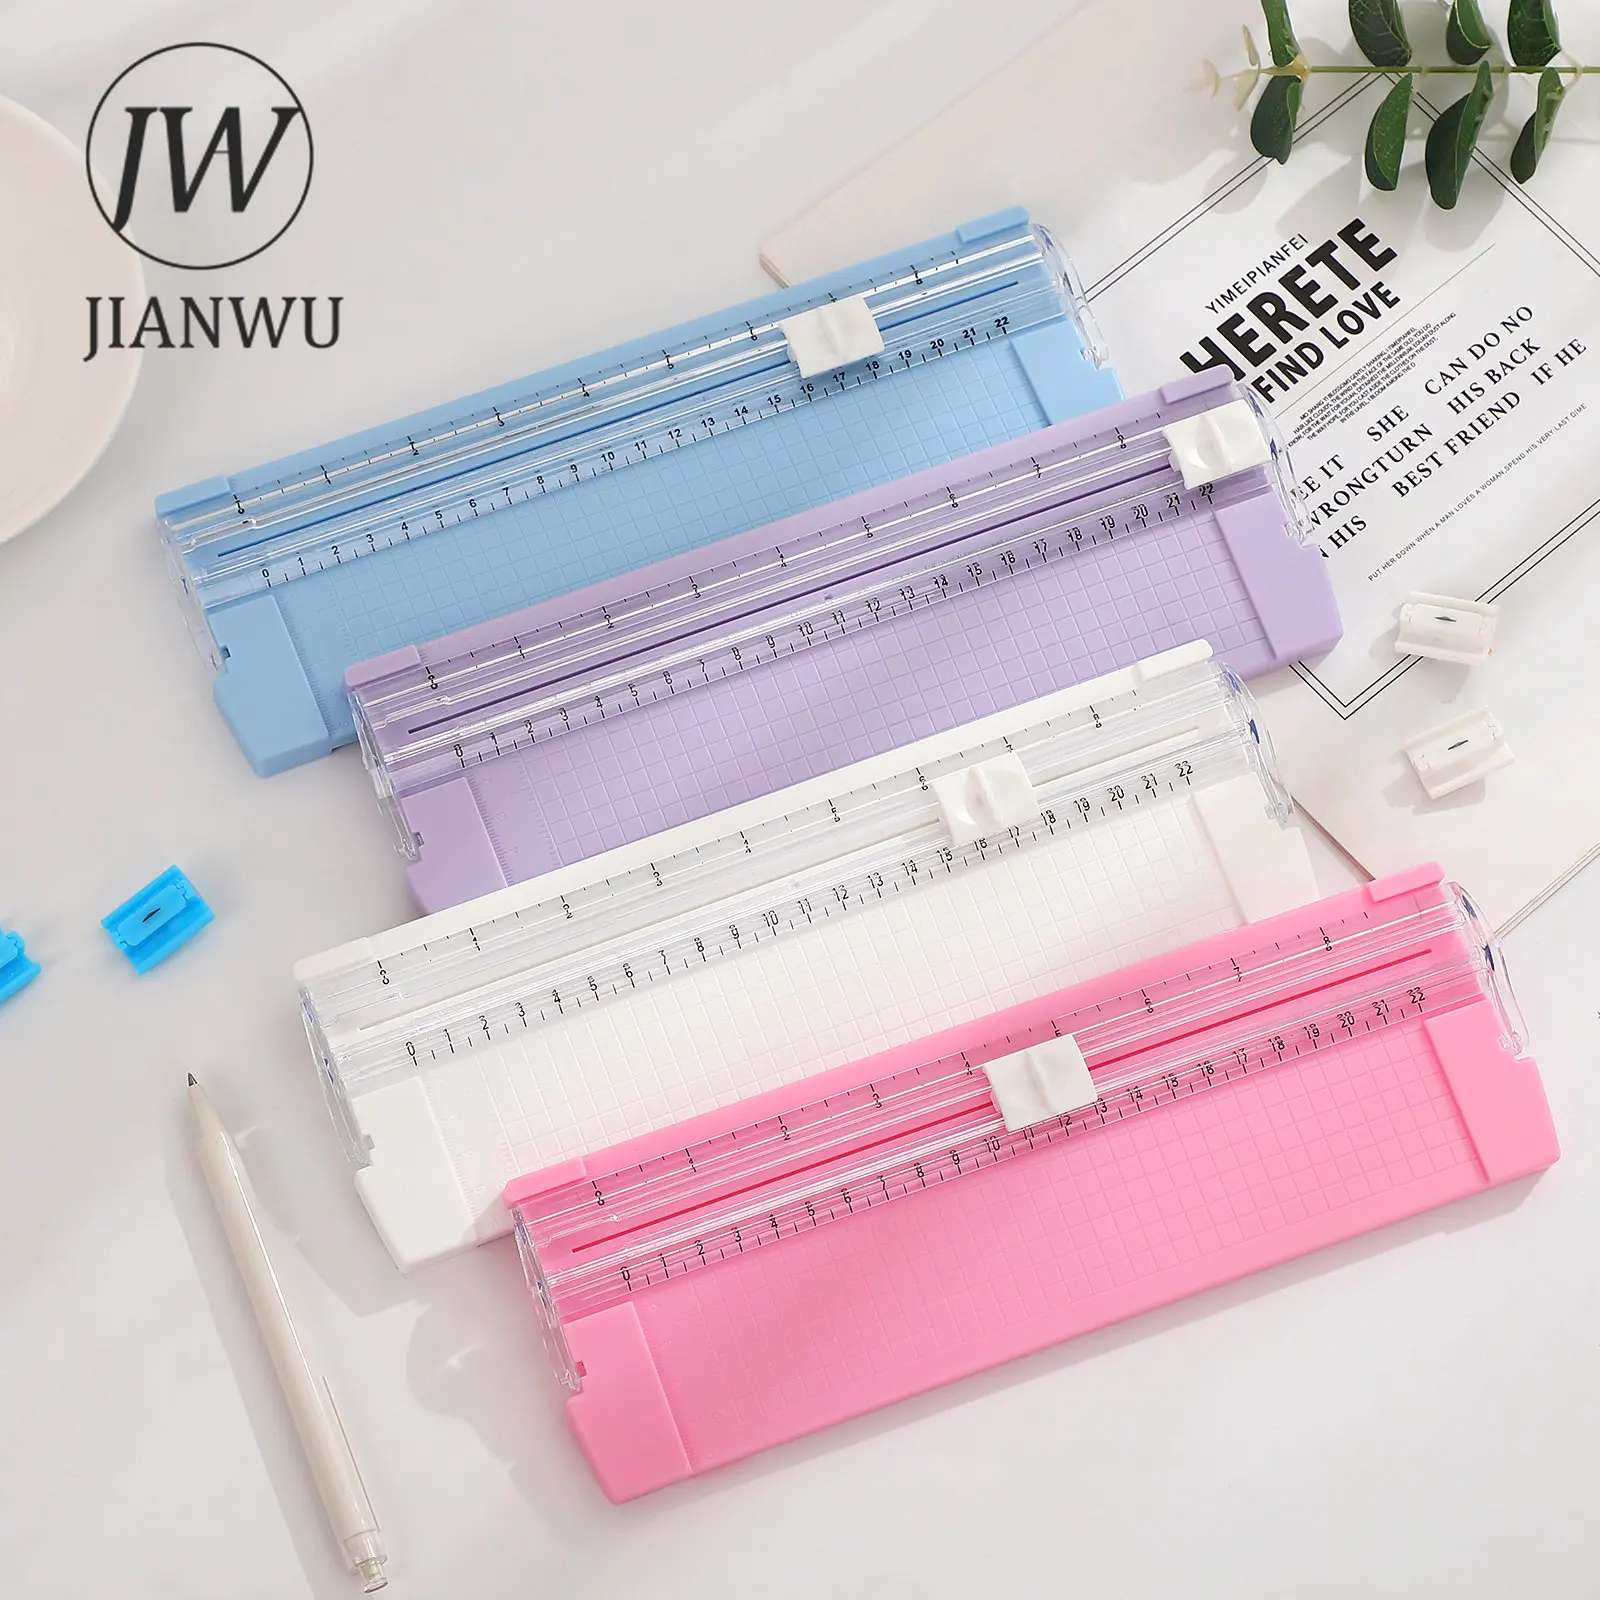 JIANWU 1pc Creative and practical mini Paper cutter Simplified paper cutter  Office Supplies